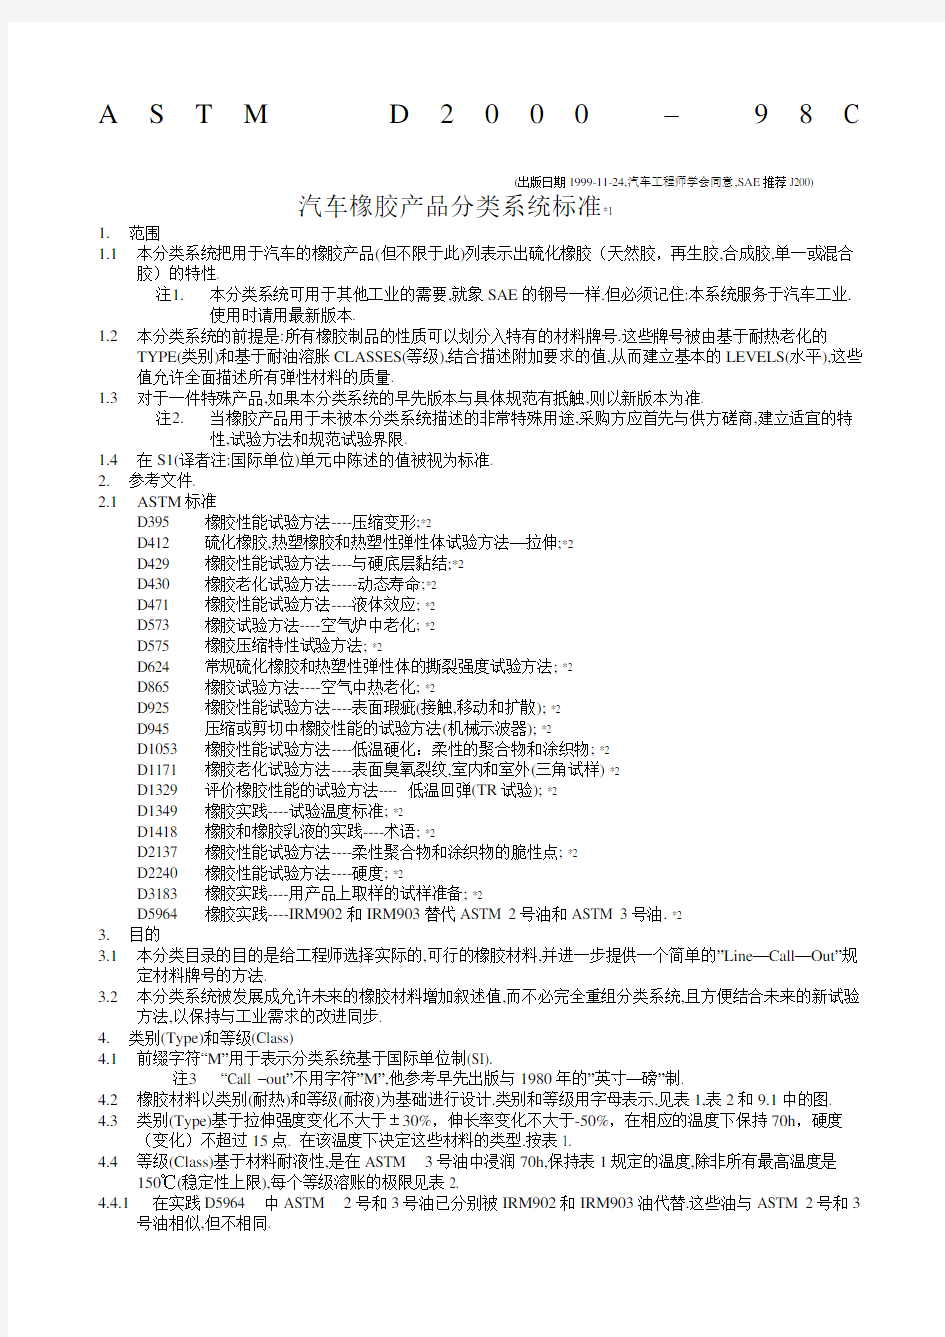 ASM汽车橡胶产品分类系统标准中文